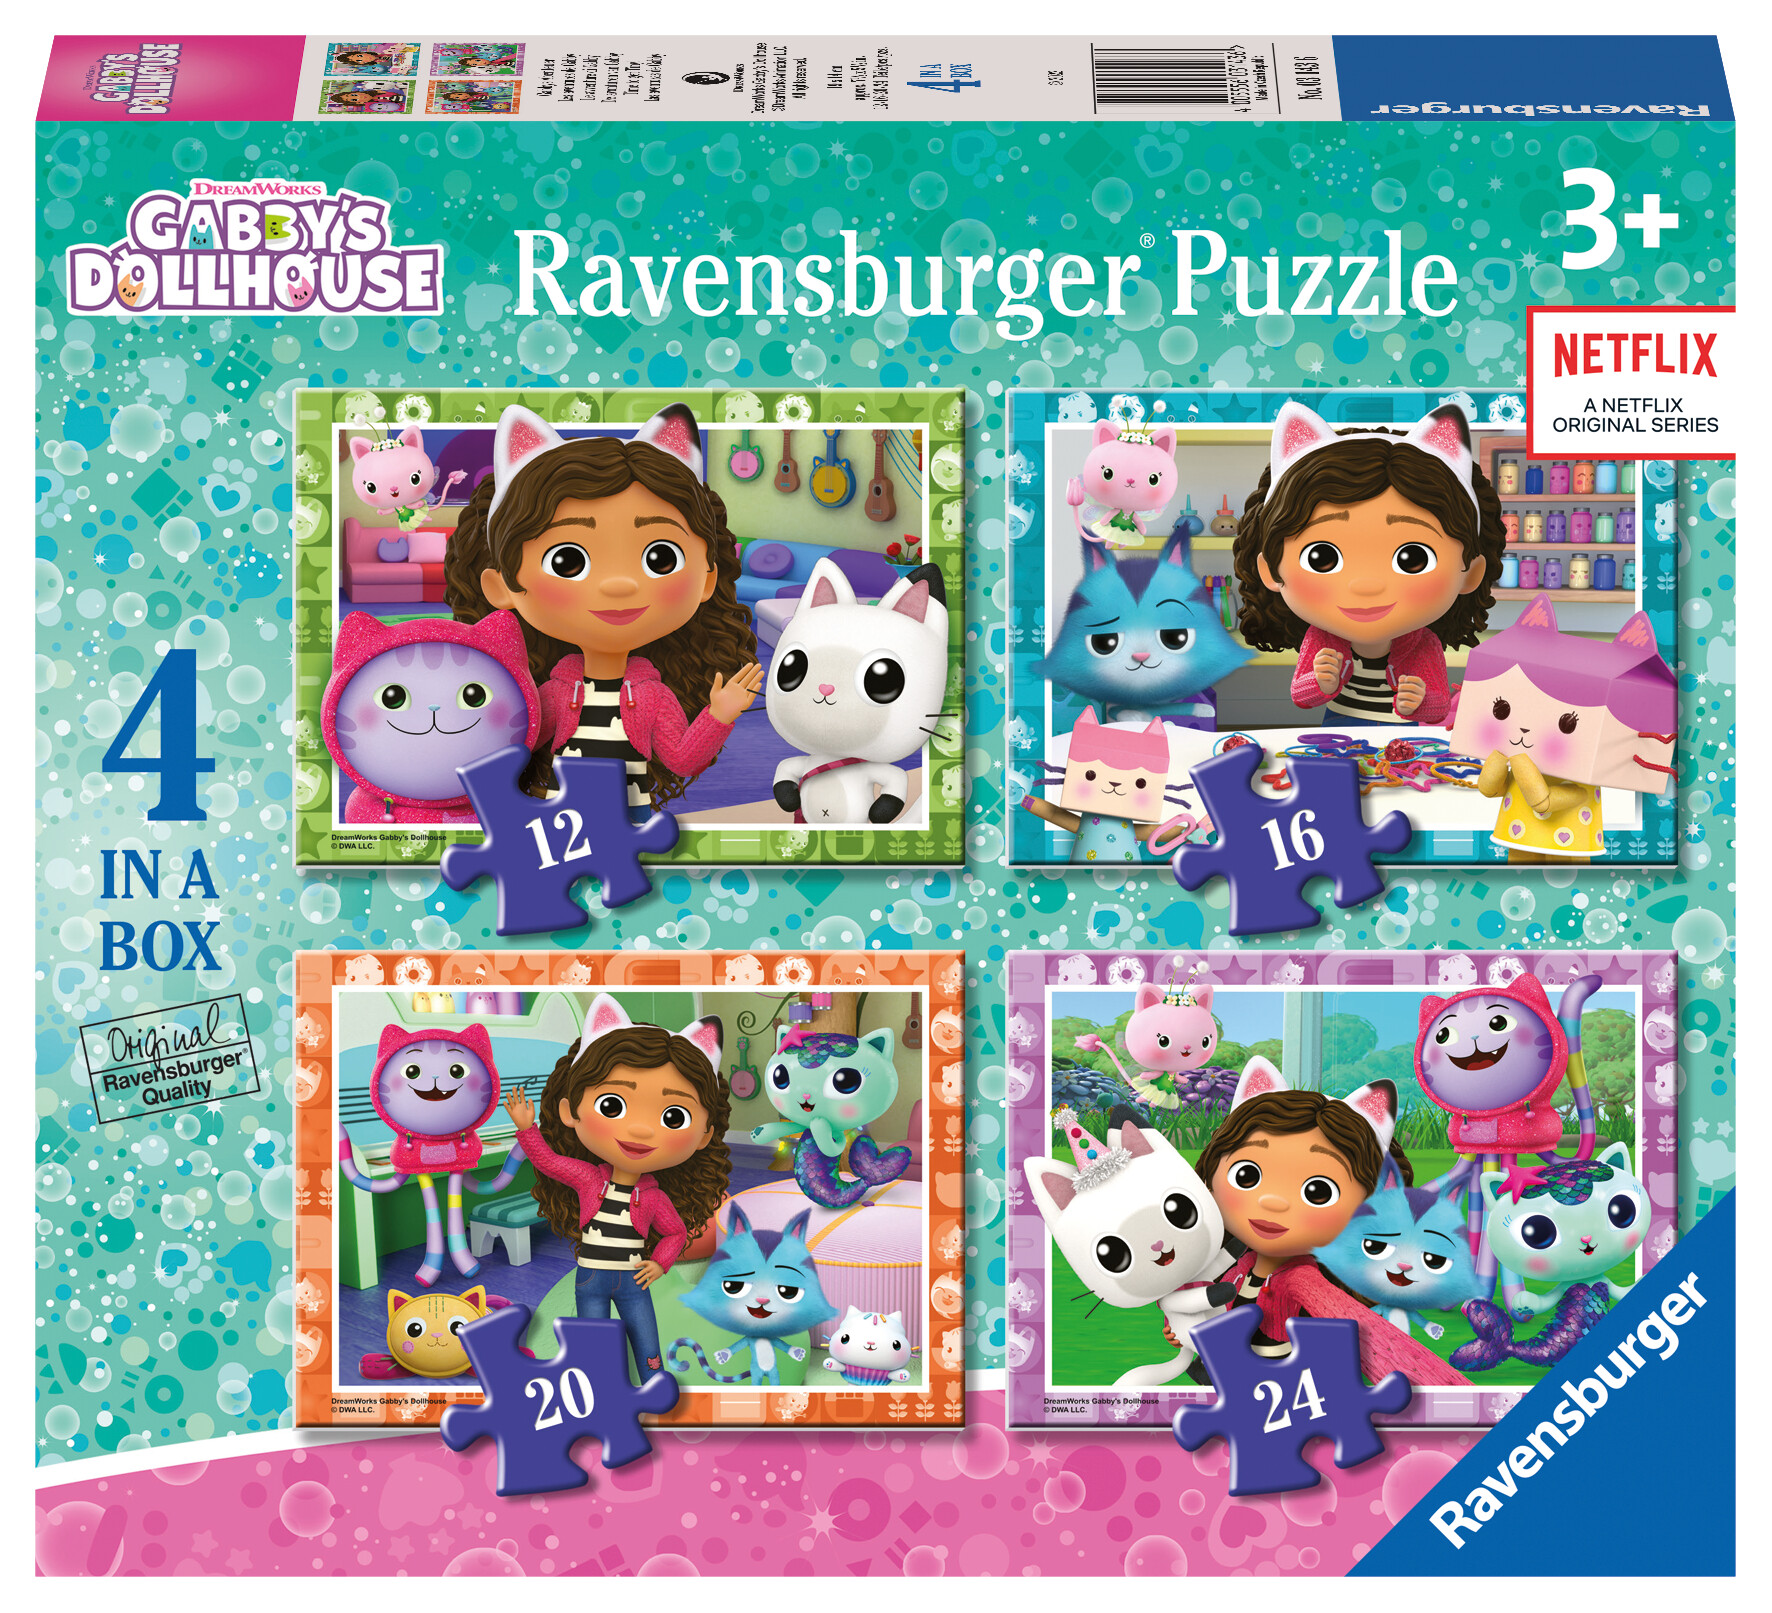 Ravensburger - puzzle gabby's dollhouse, collezione 4 in a box, 4 puzzle da 12-16-20-24 pezzi, età raccomandata 3+ anni - RAVENSBURGER